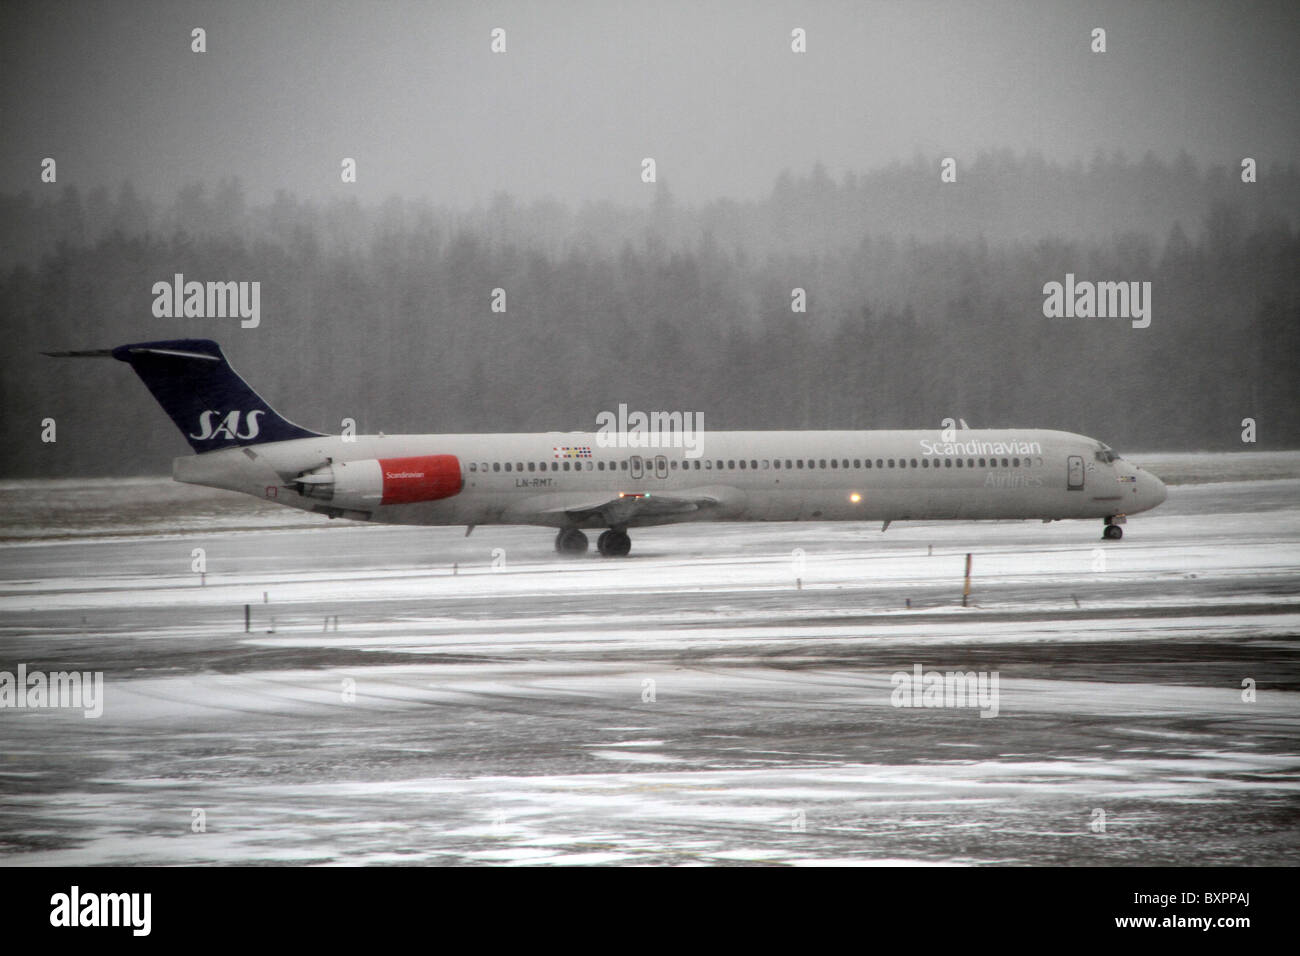 L'aéroport d'Arlanda, Stockholm, Suède. Un avion SAS sur le tarmac de neige un jour brumeux et relié à l'aéroport d'Arlanda. Banque D'Images